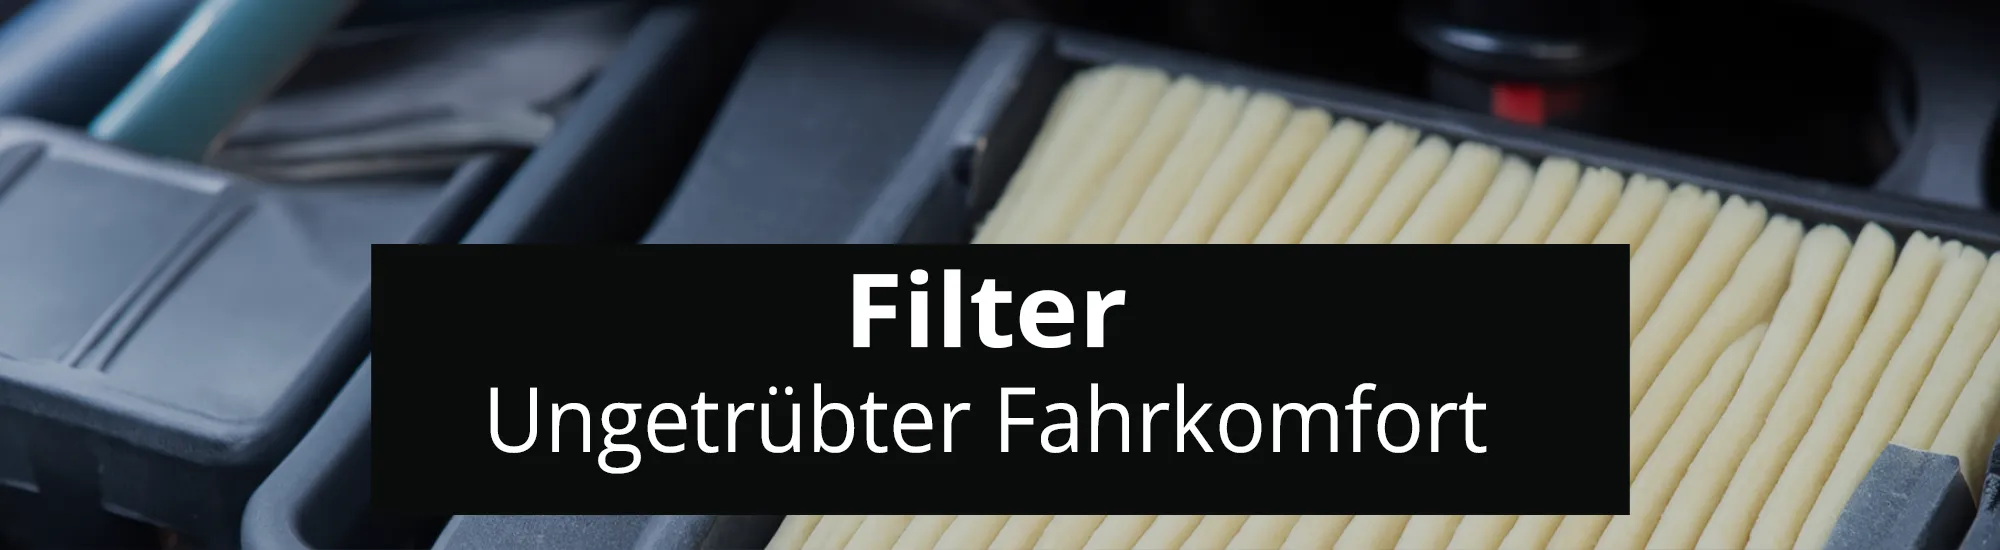 Filter header